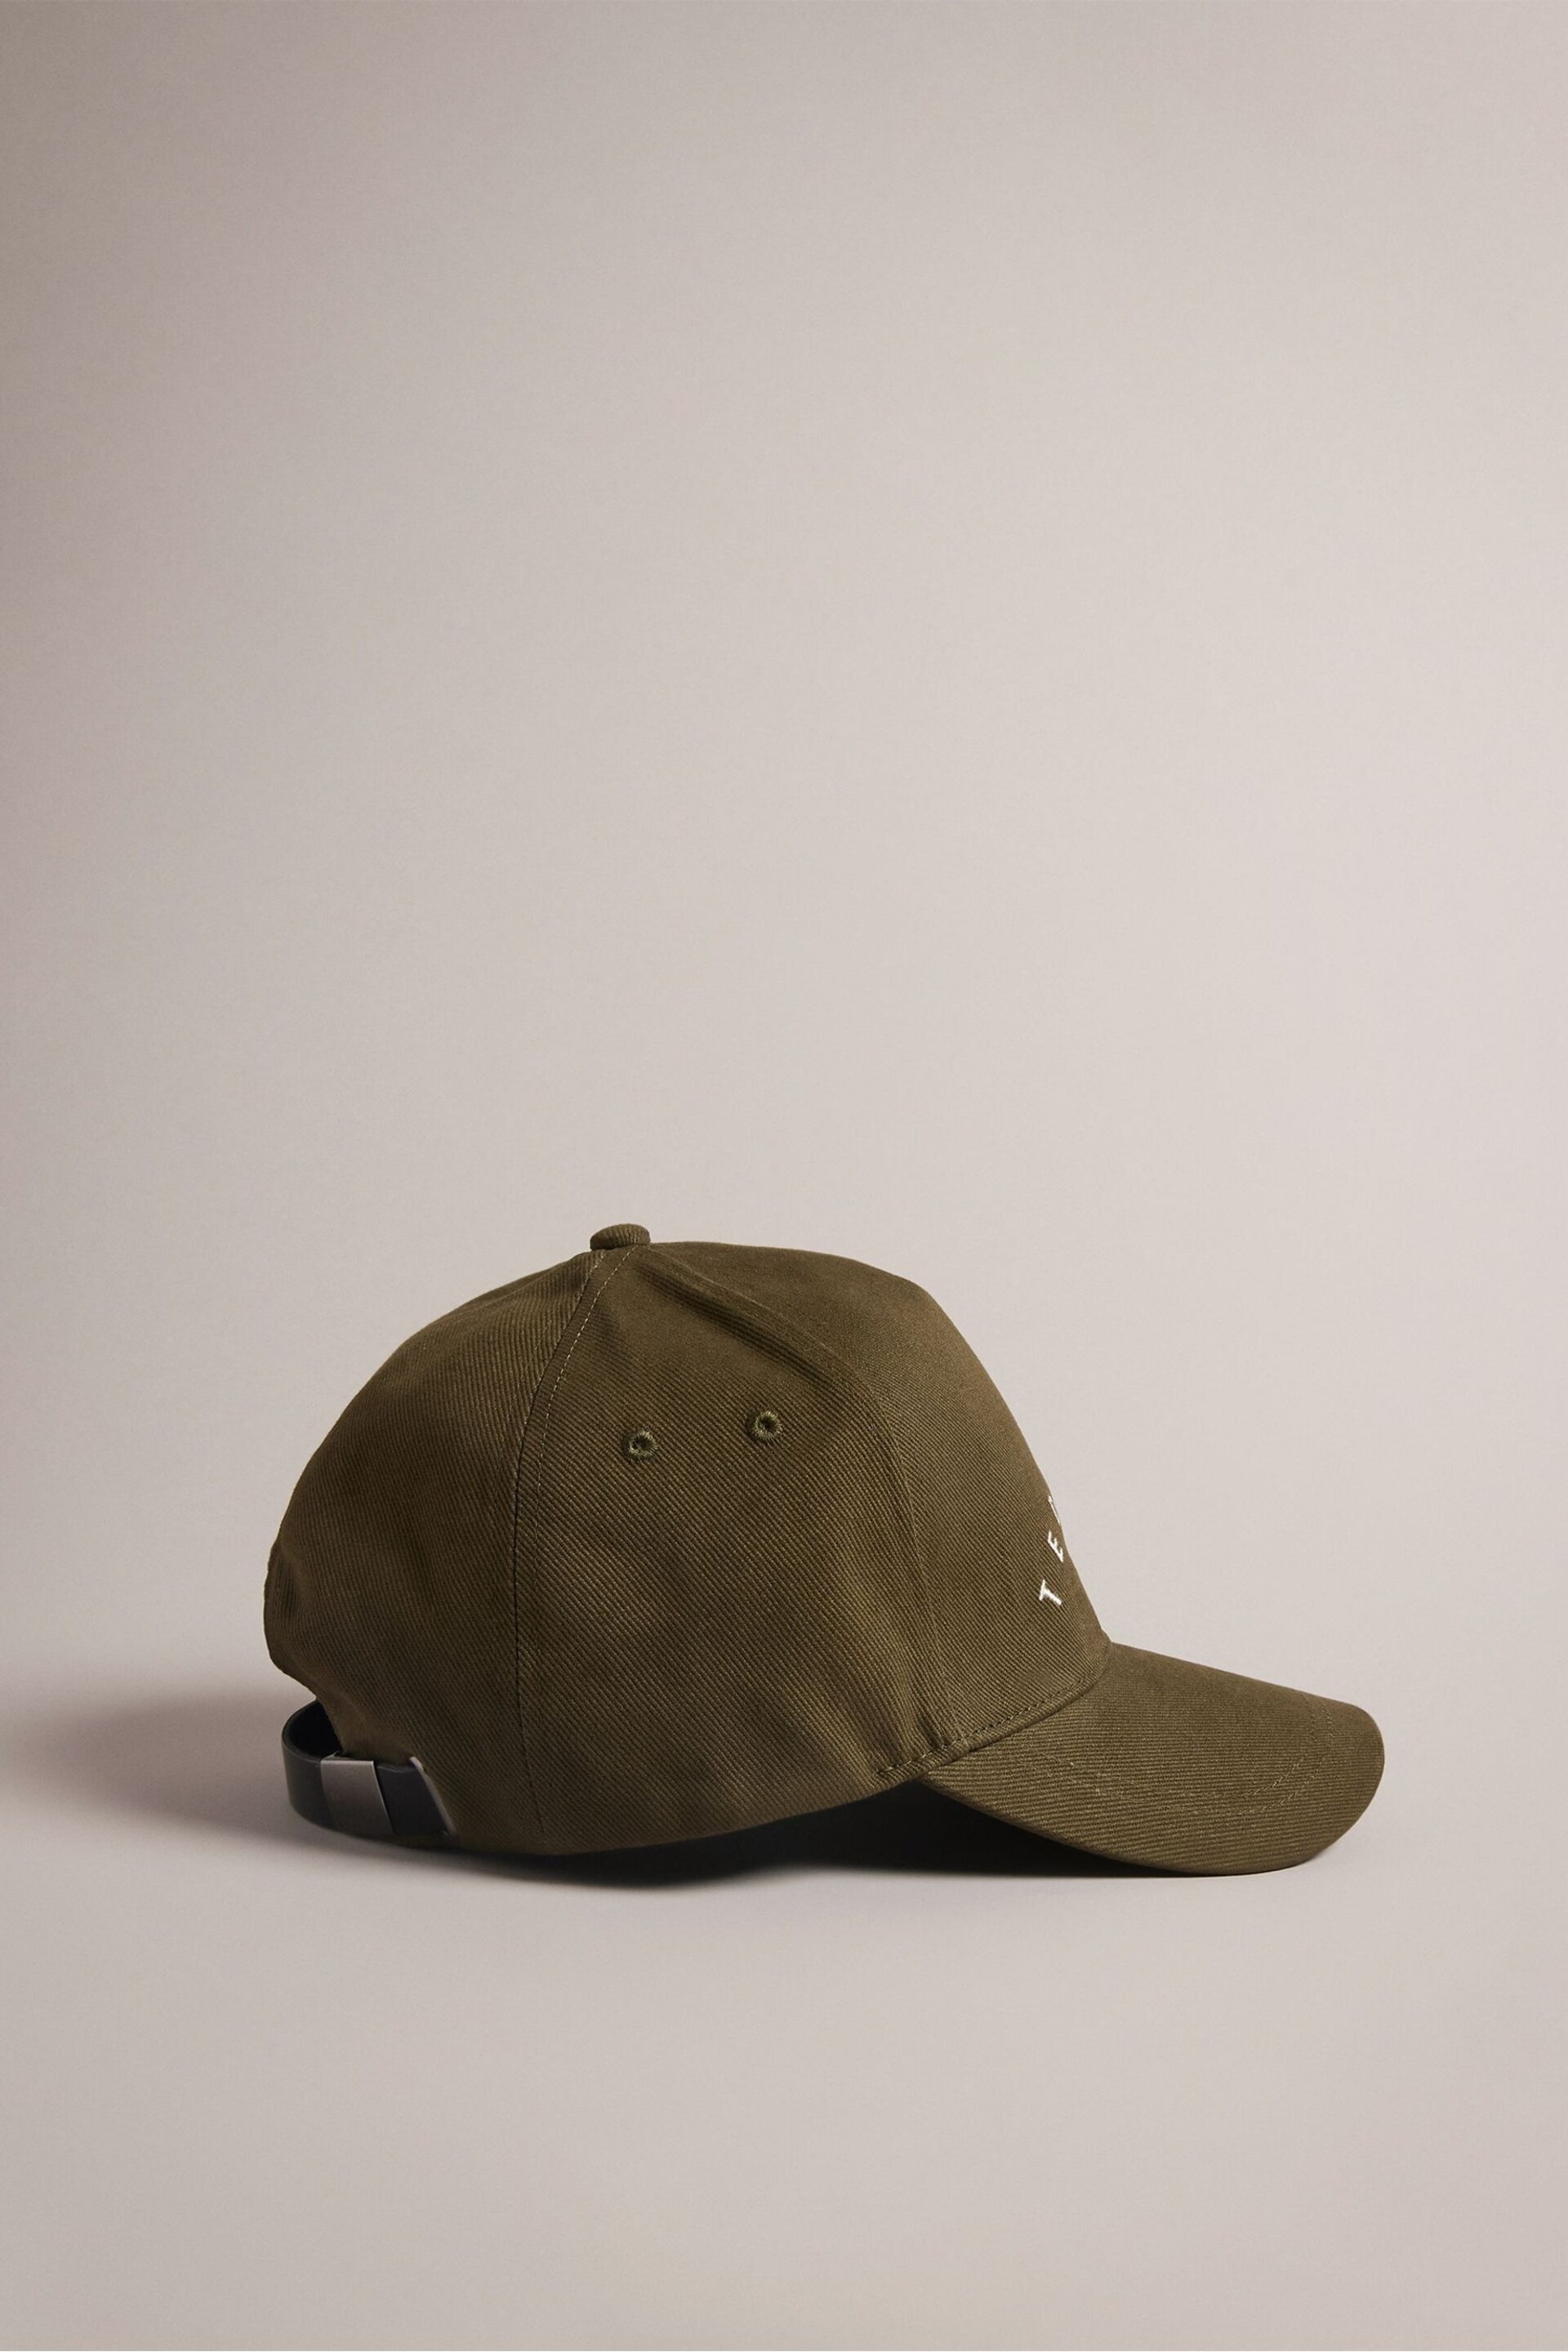 Ted Baker Green Frreddi Branded Cap - Image 1 of 4